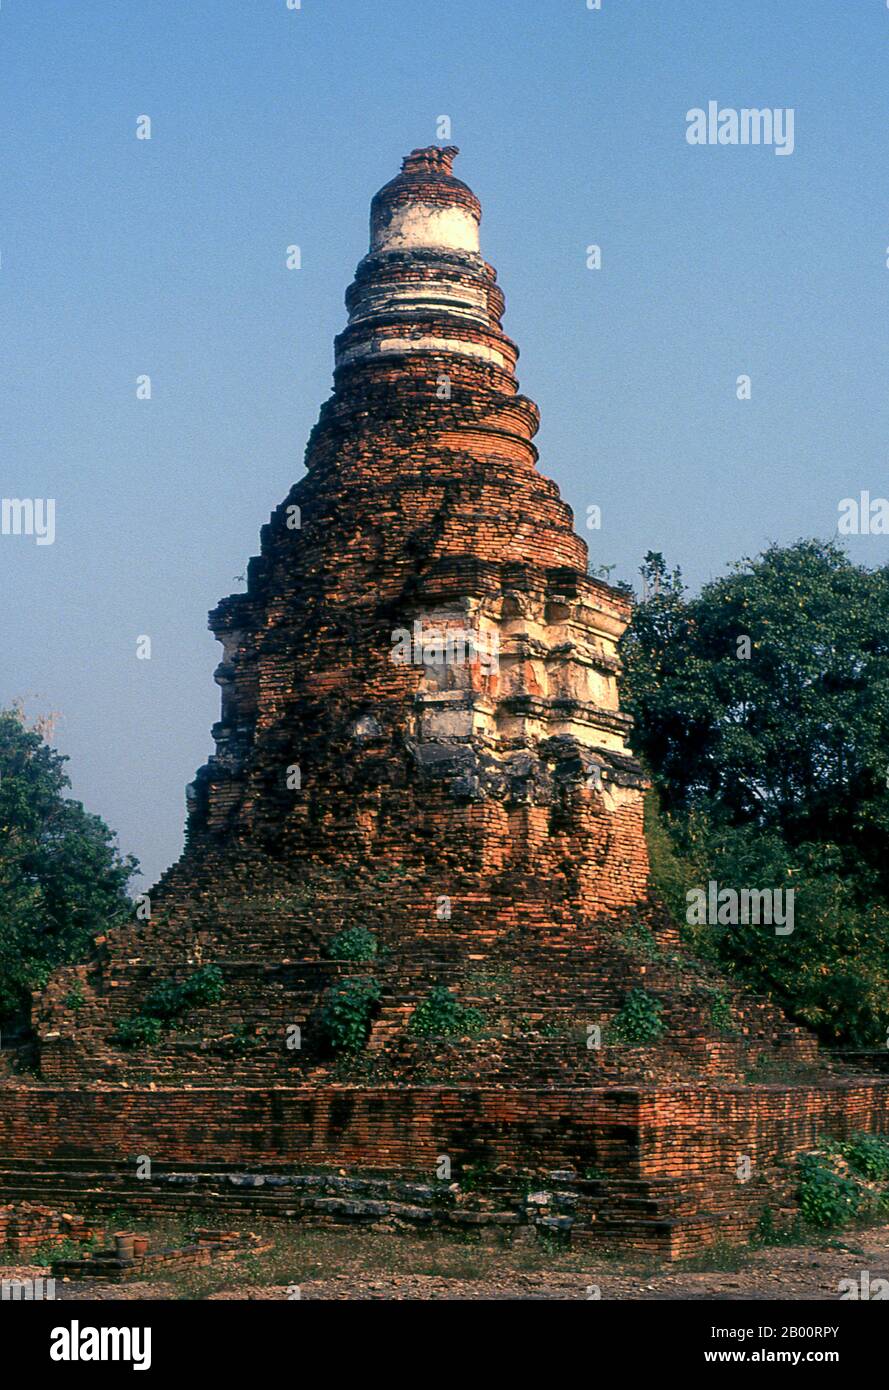 Thailand: Wat E-Kang, Wiang Kum kam, Chiang Mai. Im späten 13. Jahrhundert u.Z. aufgegeben und heute in Ruinen, war Wiang Kum kam einst die Hauptstadt der nördlichen Region Thailands und liegt südlich von Chiang Mai. Es wurde von König Mangrai zu einer Zeit im 13. Jahrhundert nach seinem Sieg über das Hariphunchai Königreich des modernen Lamphun gebaut. Doch nachdem die Stadt mehrere Male überflutet hatte, entschied sich Mangrai, die Hauptstadt seines Königreichs umzusiedeln und verlegte sie weiter nördlich am Fluss Ping zu einem Ort, der jetzt die Stadt Chiang Mai ist. Stockfoto